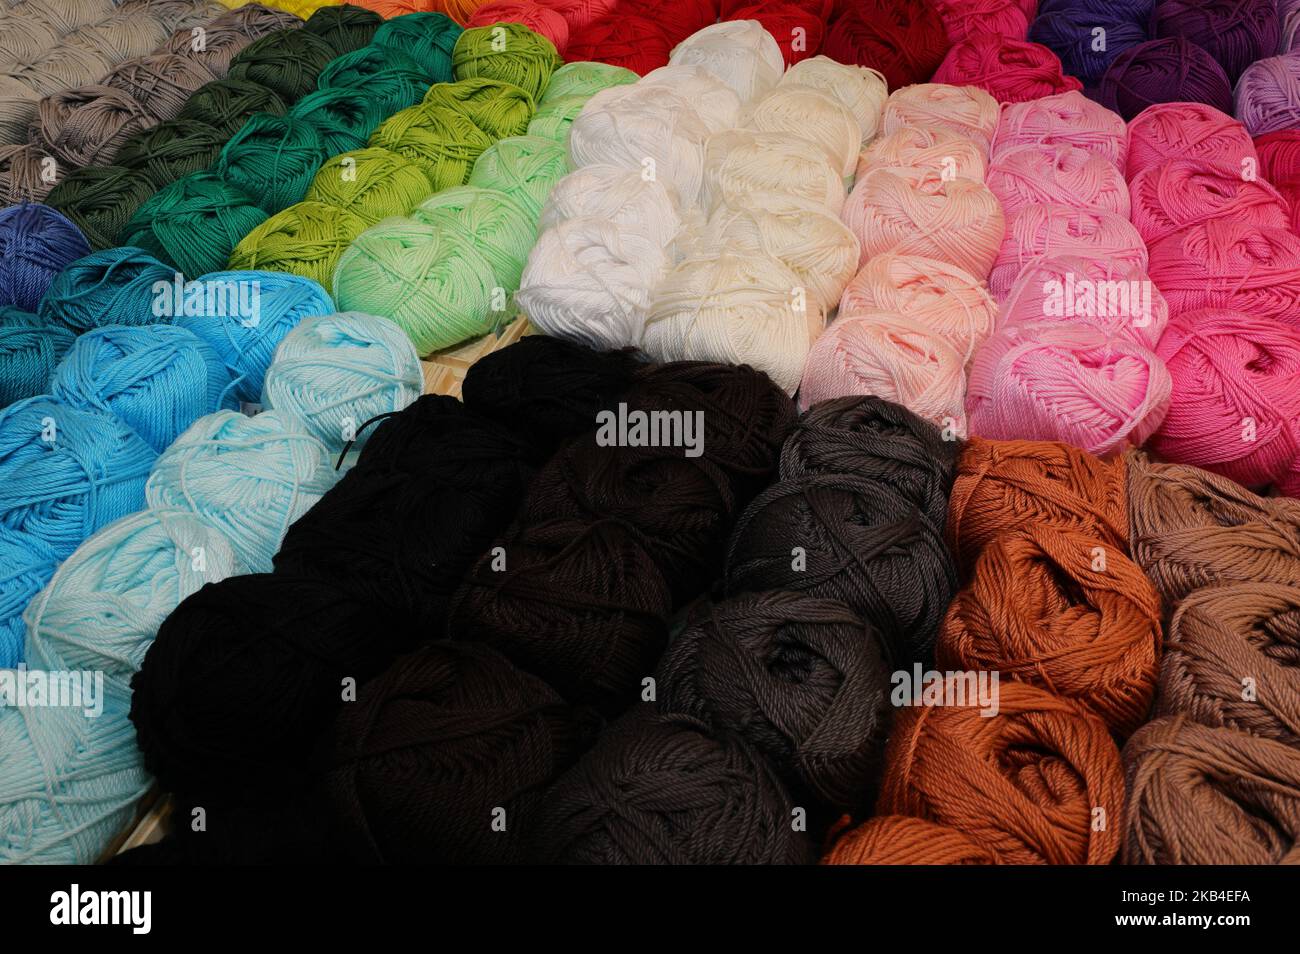 Balles de laine ou de coton en vente dans la boutique Banque D'Images